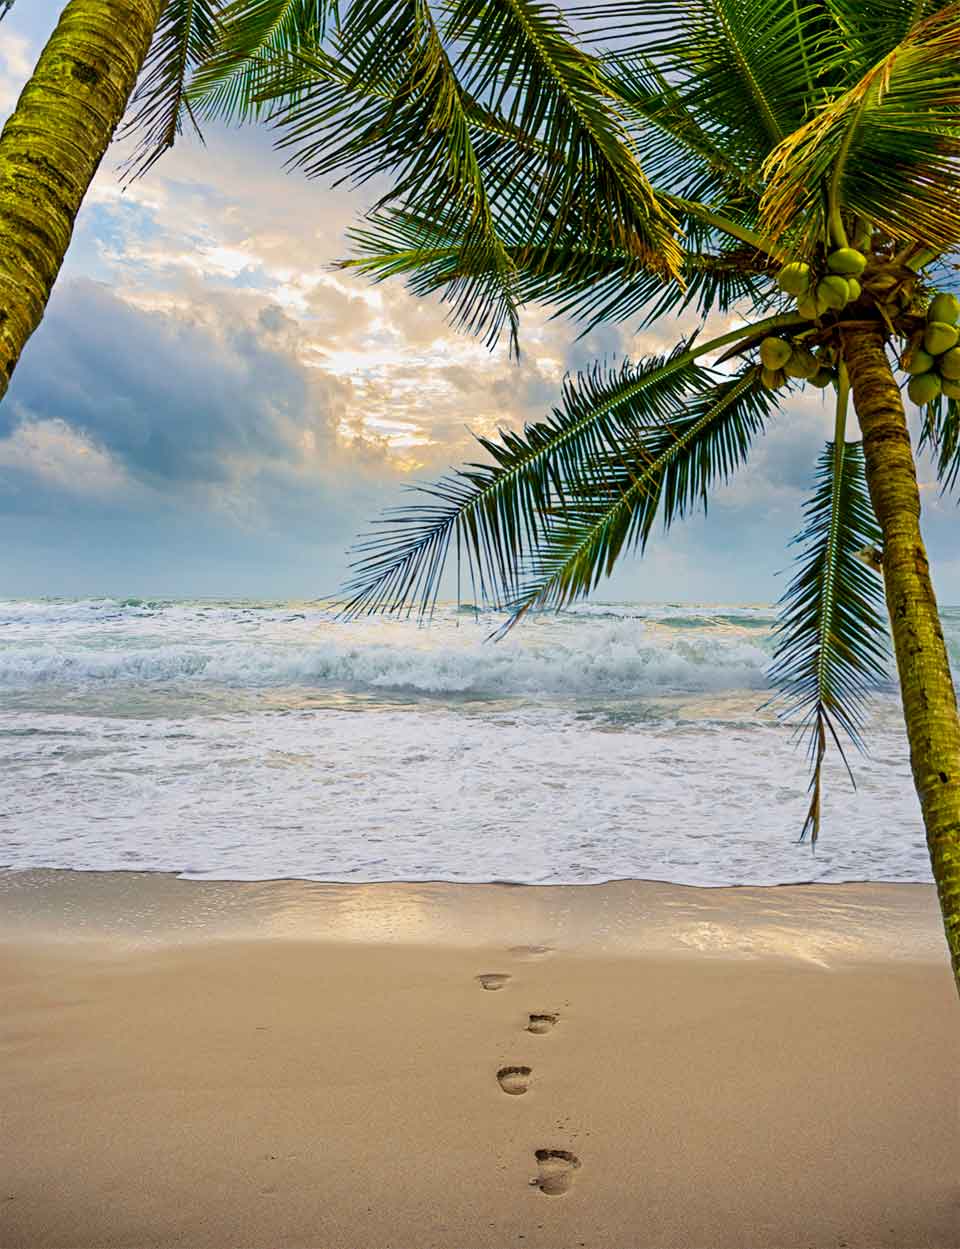 Pegadas na areia até ao mar numa praia de clima tropical do Brasil, com palmeiras.